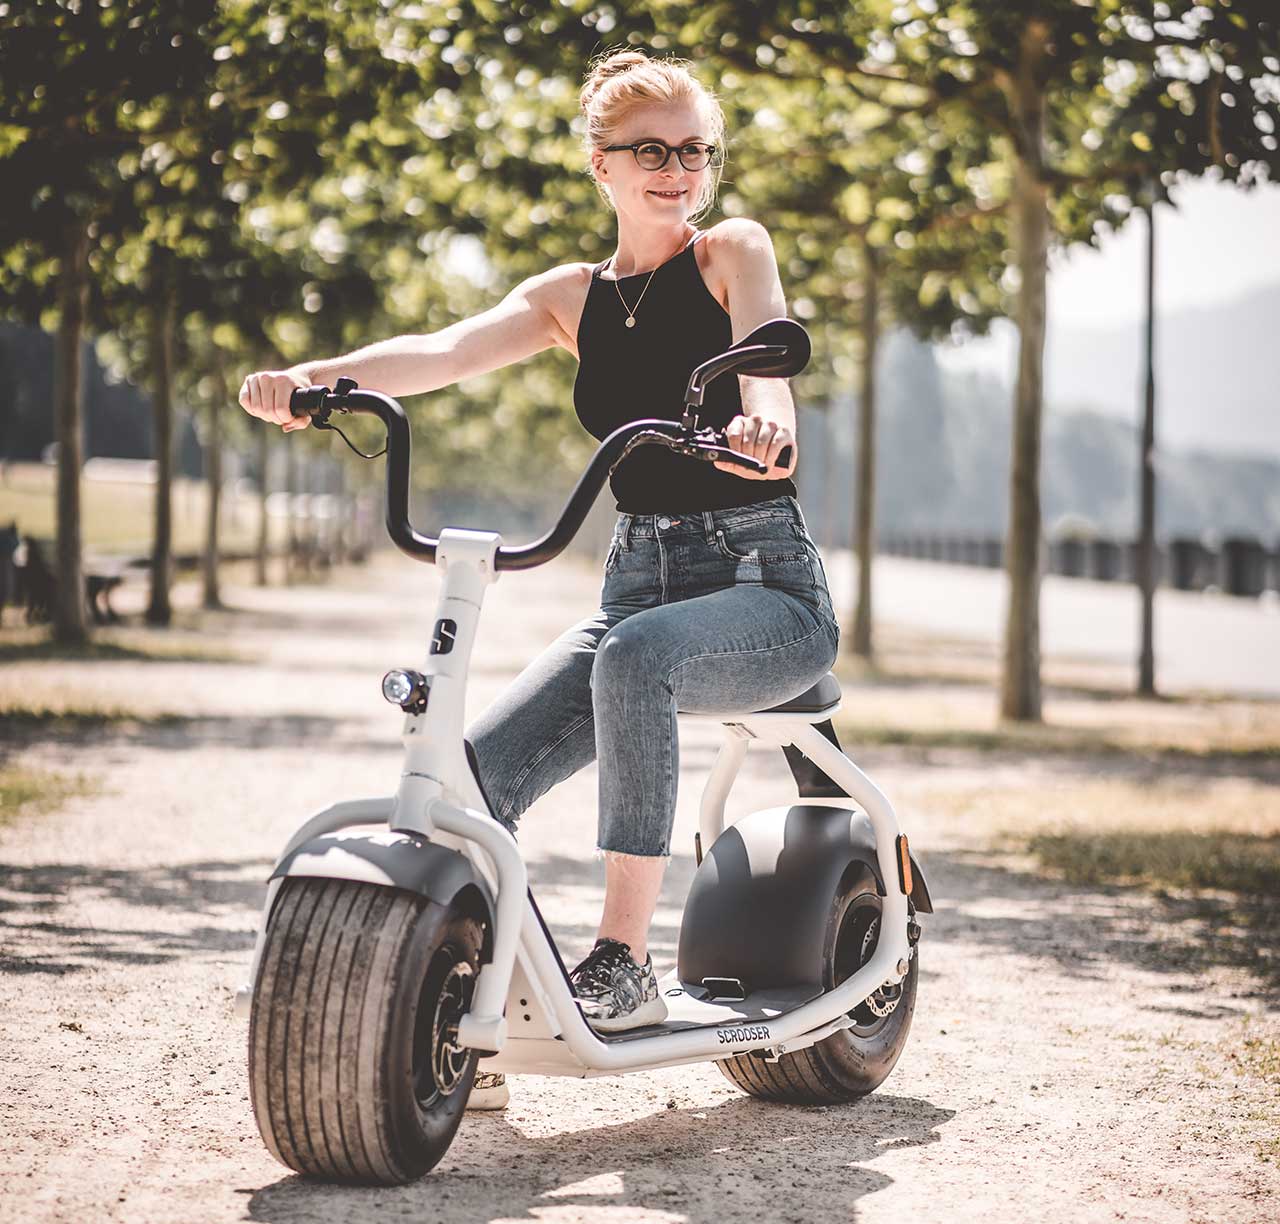 Fatbike scooters